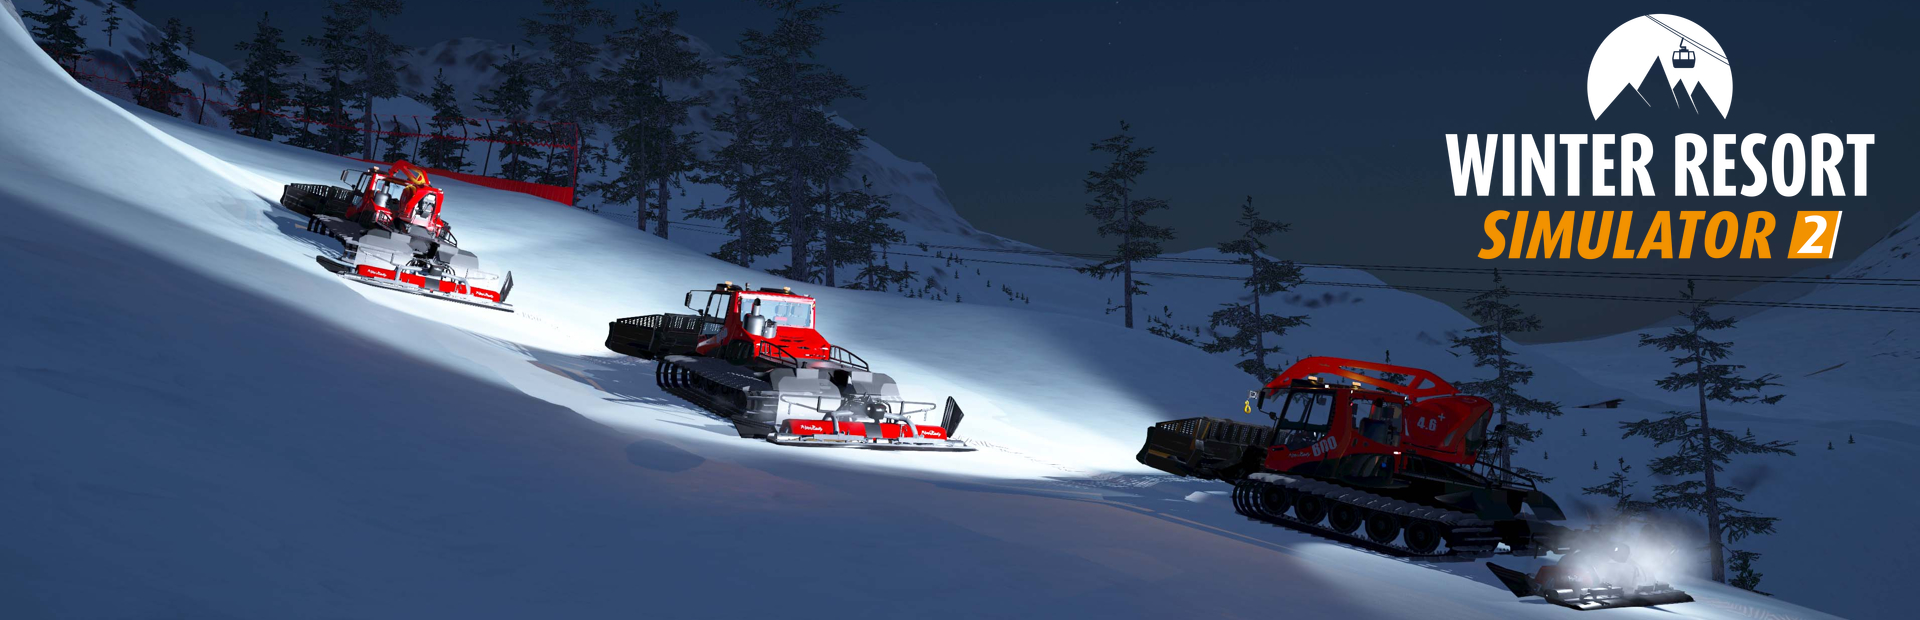 دانلود بازی Winter Resort Simulator 2 برای PC | گیمباتو